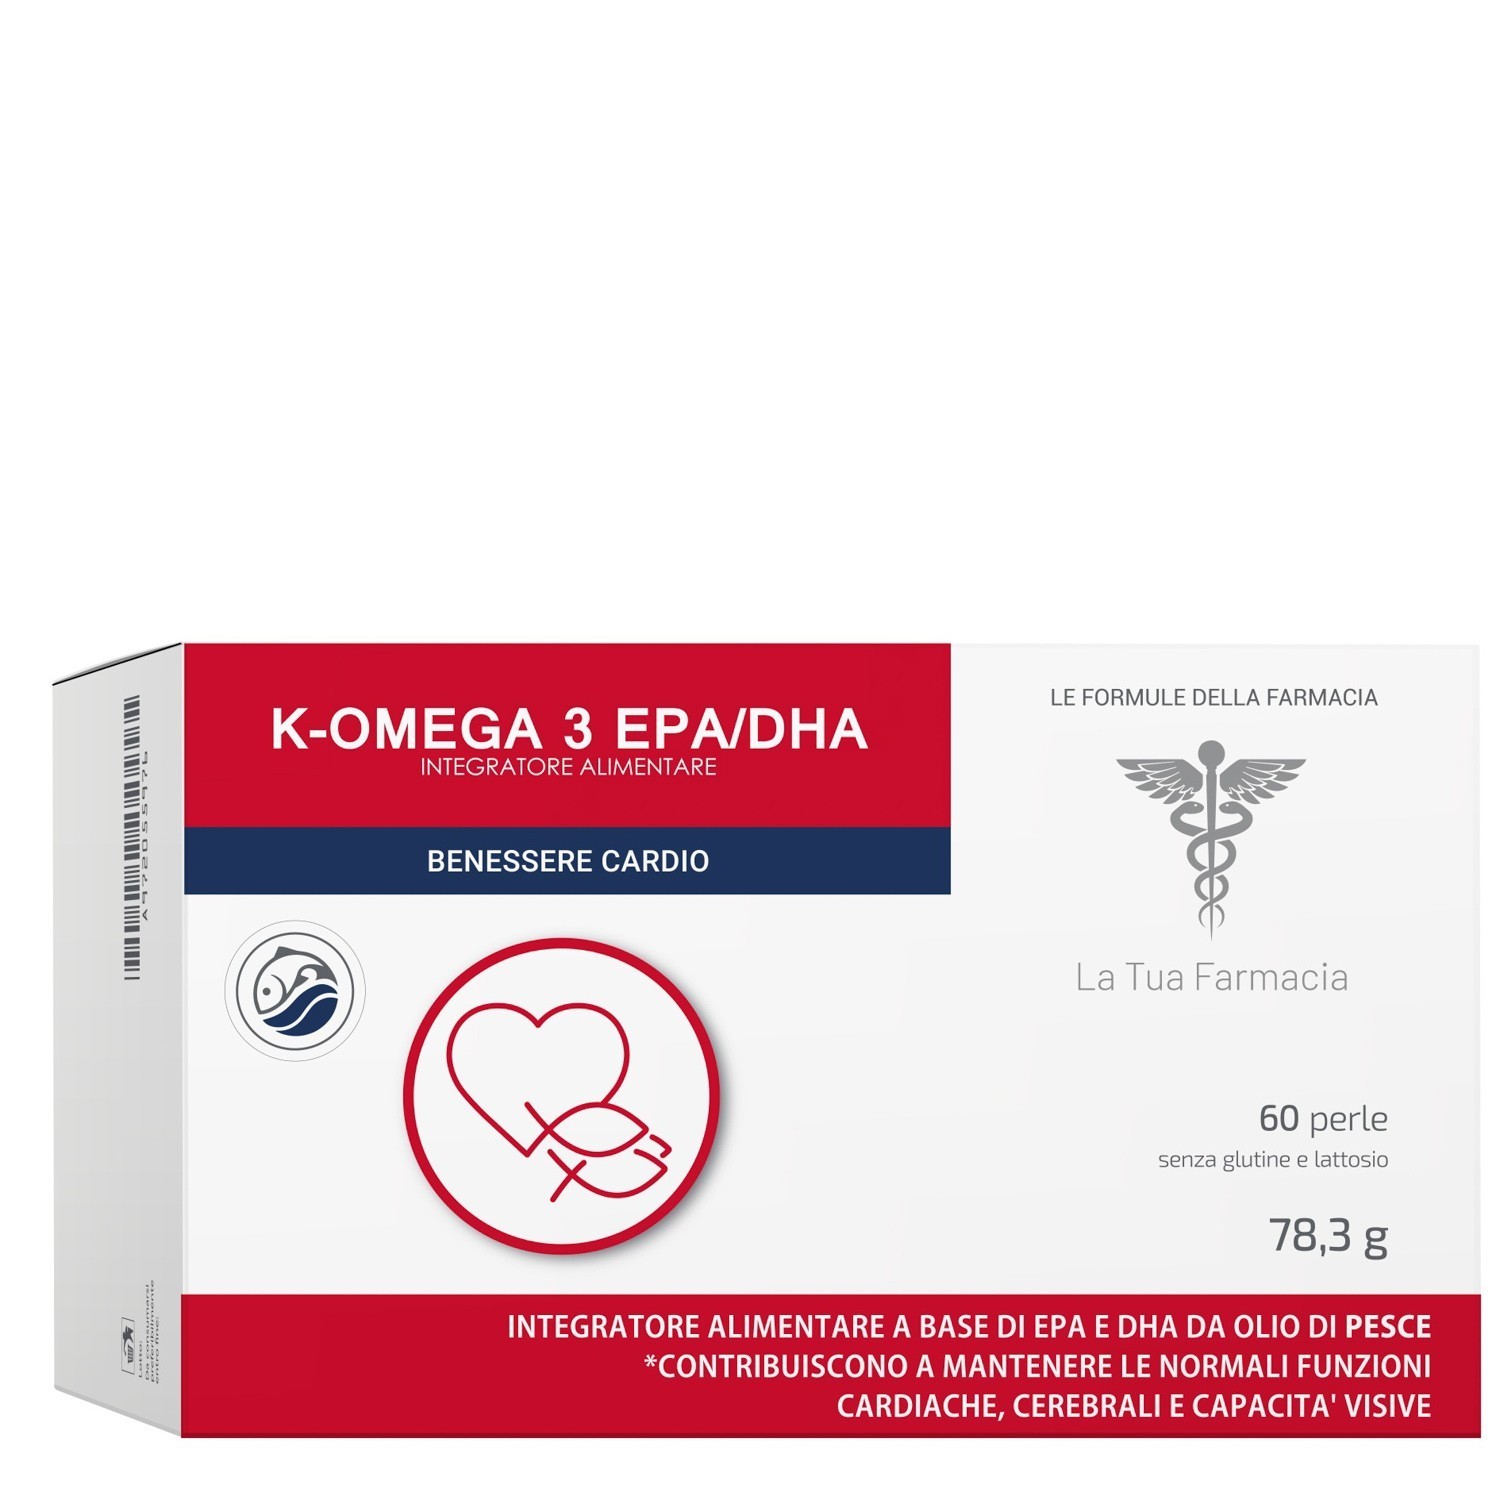 K-Omega 3 EPA/DHA 60 perle